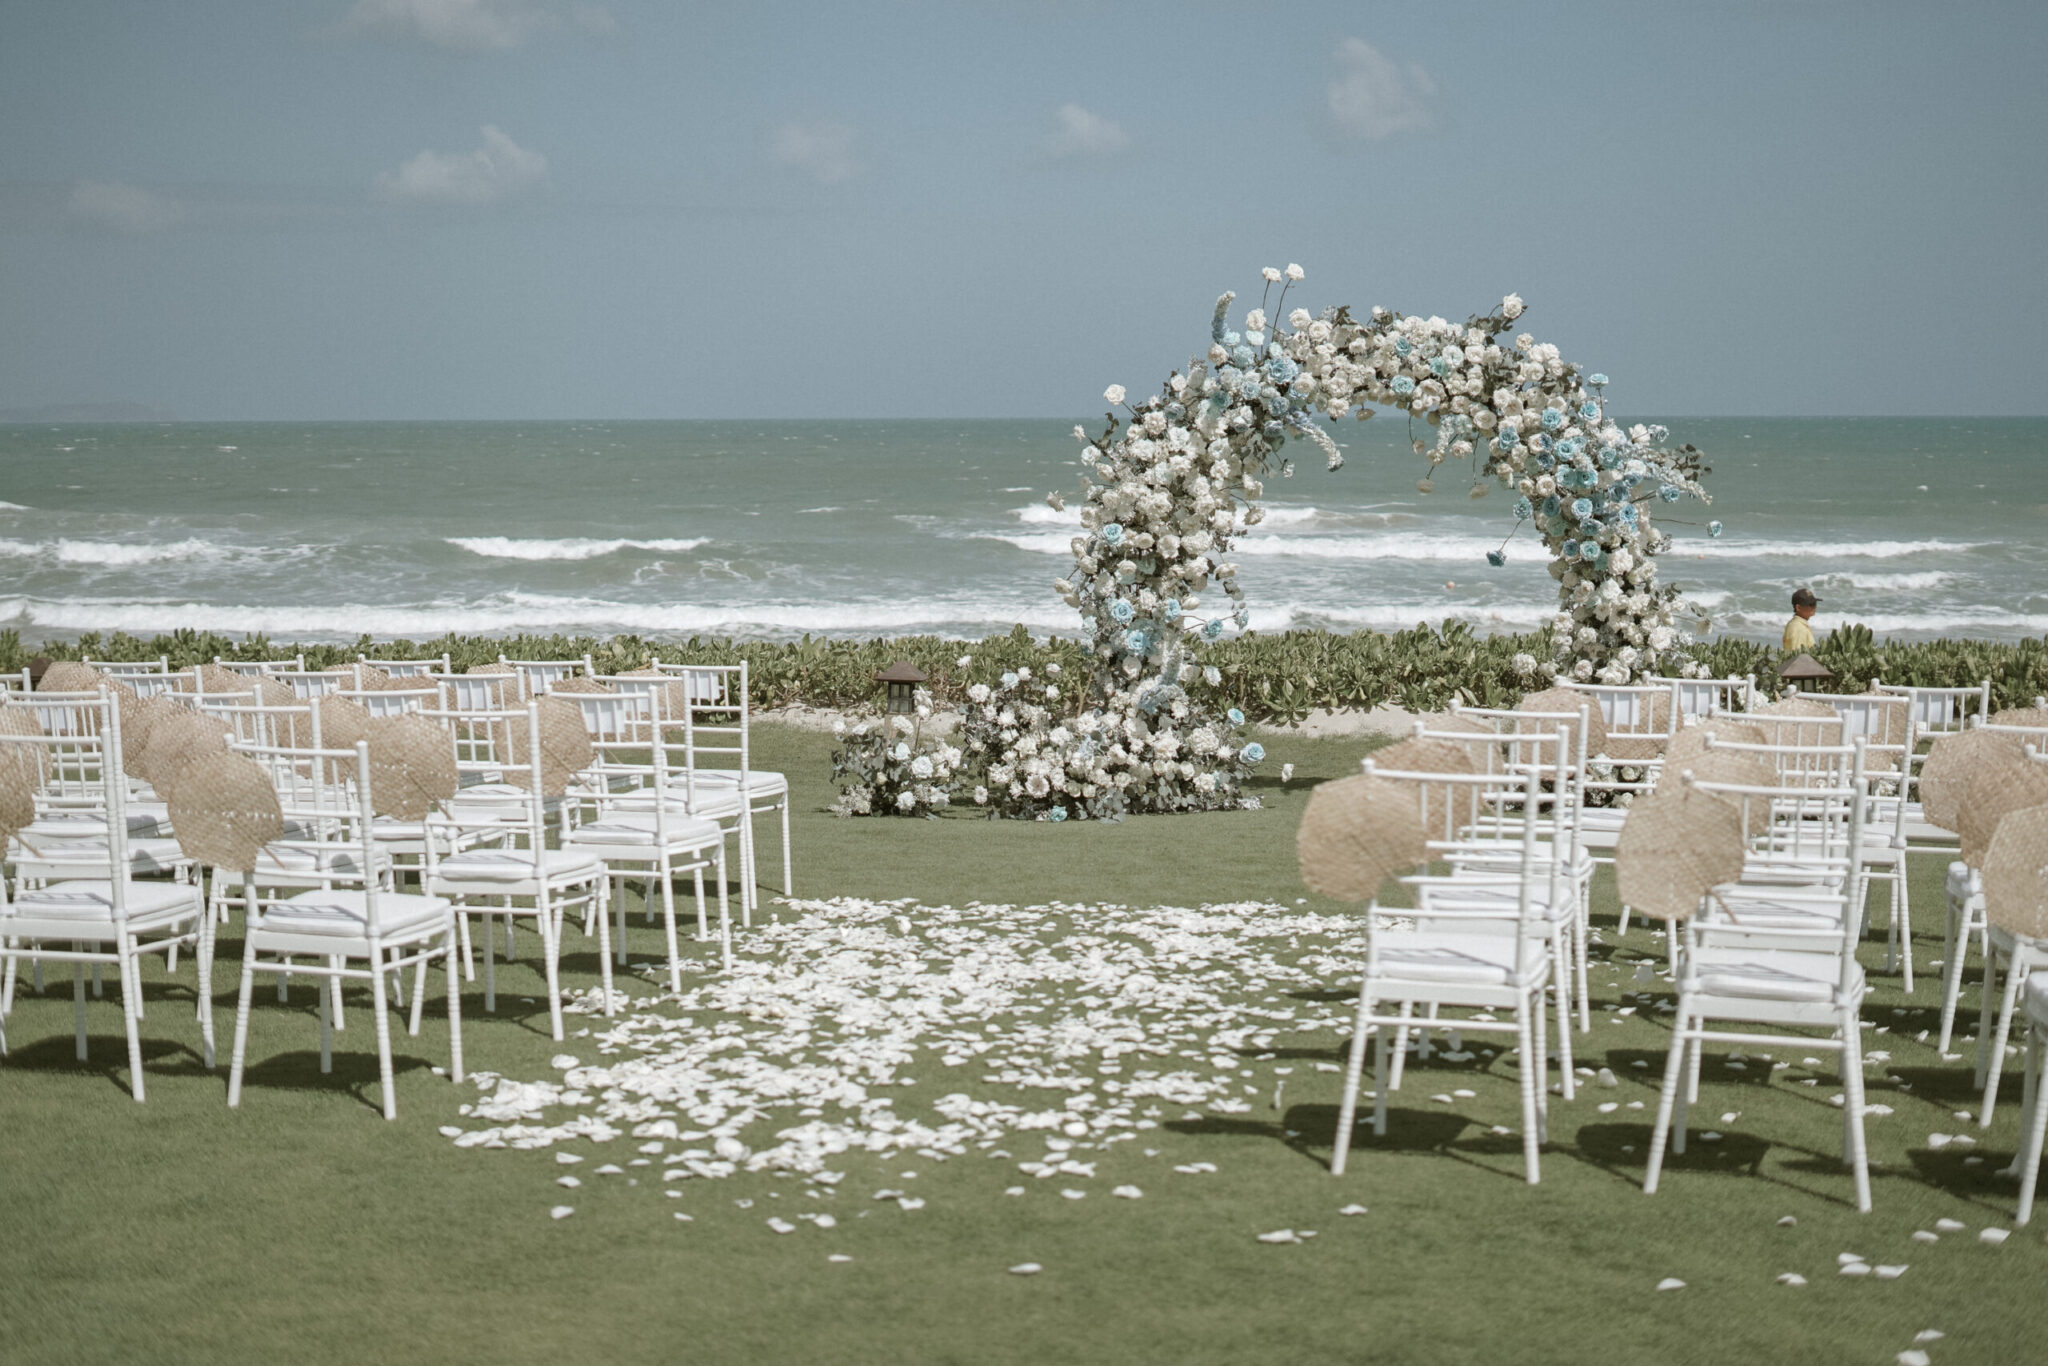 A blue-themed beach wedding in Nha Trang